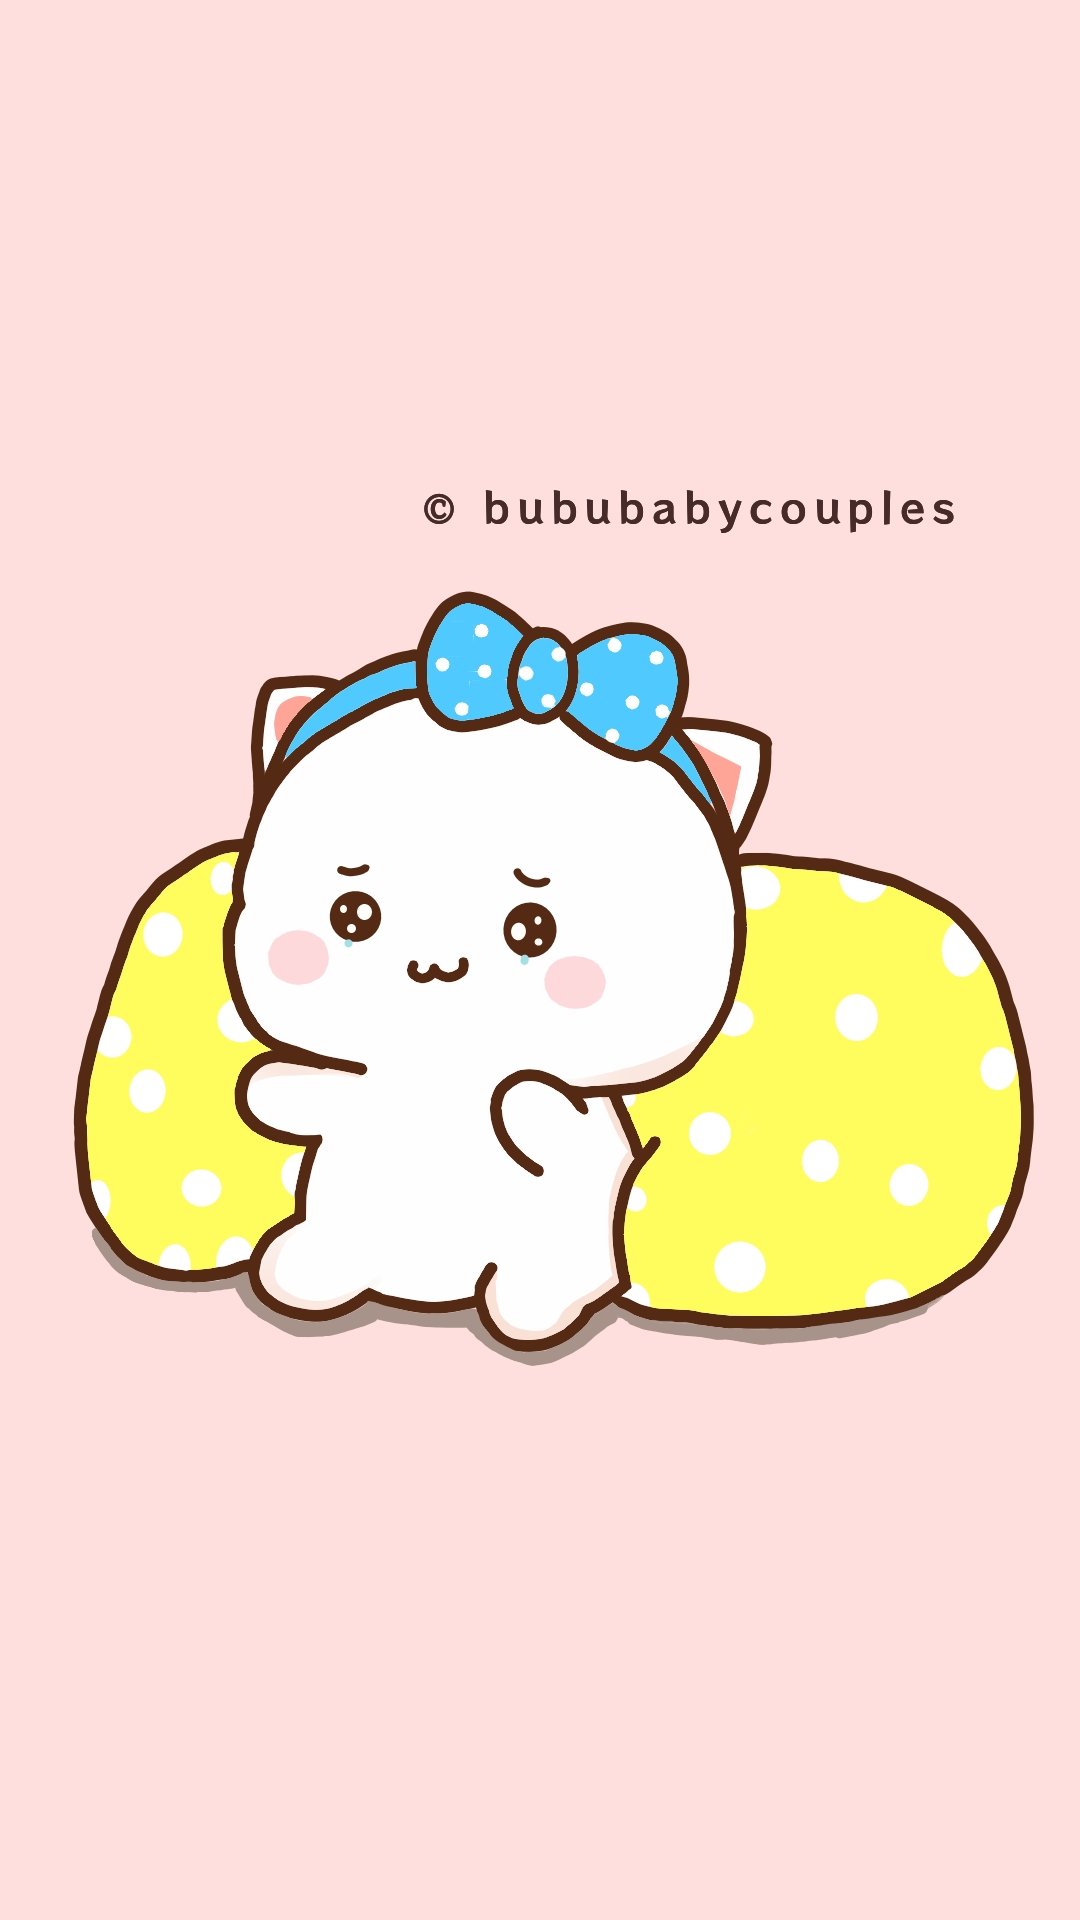 Bububabycouples (@bububabycouples) / Twitter